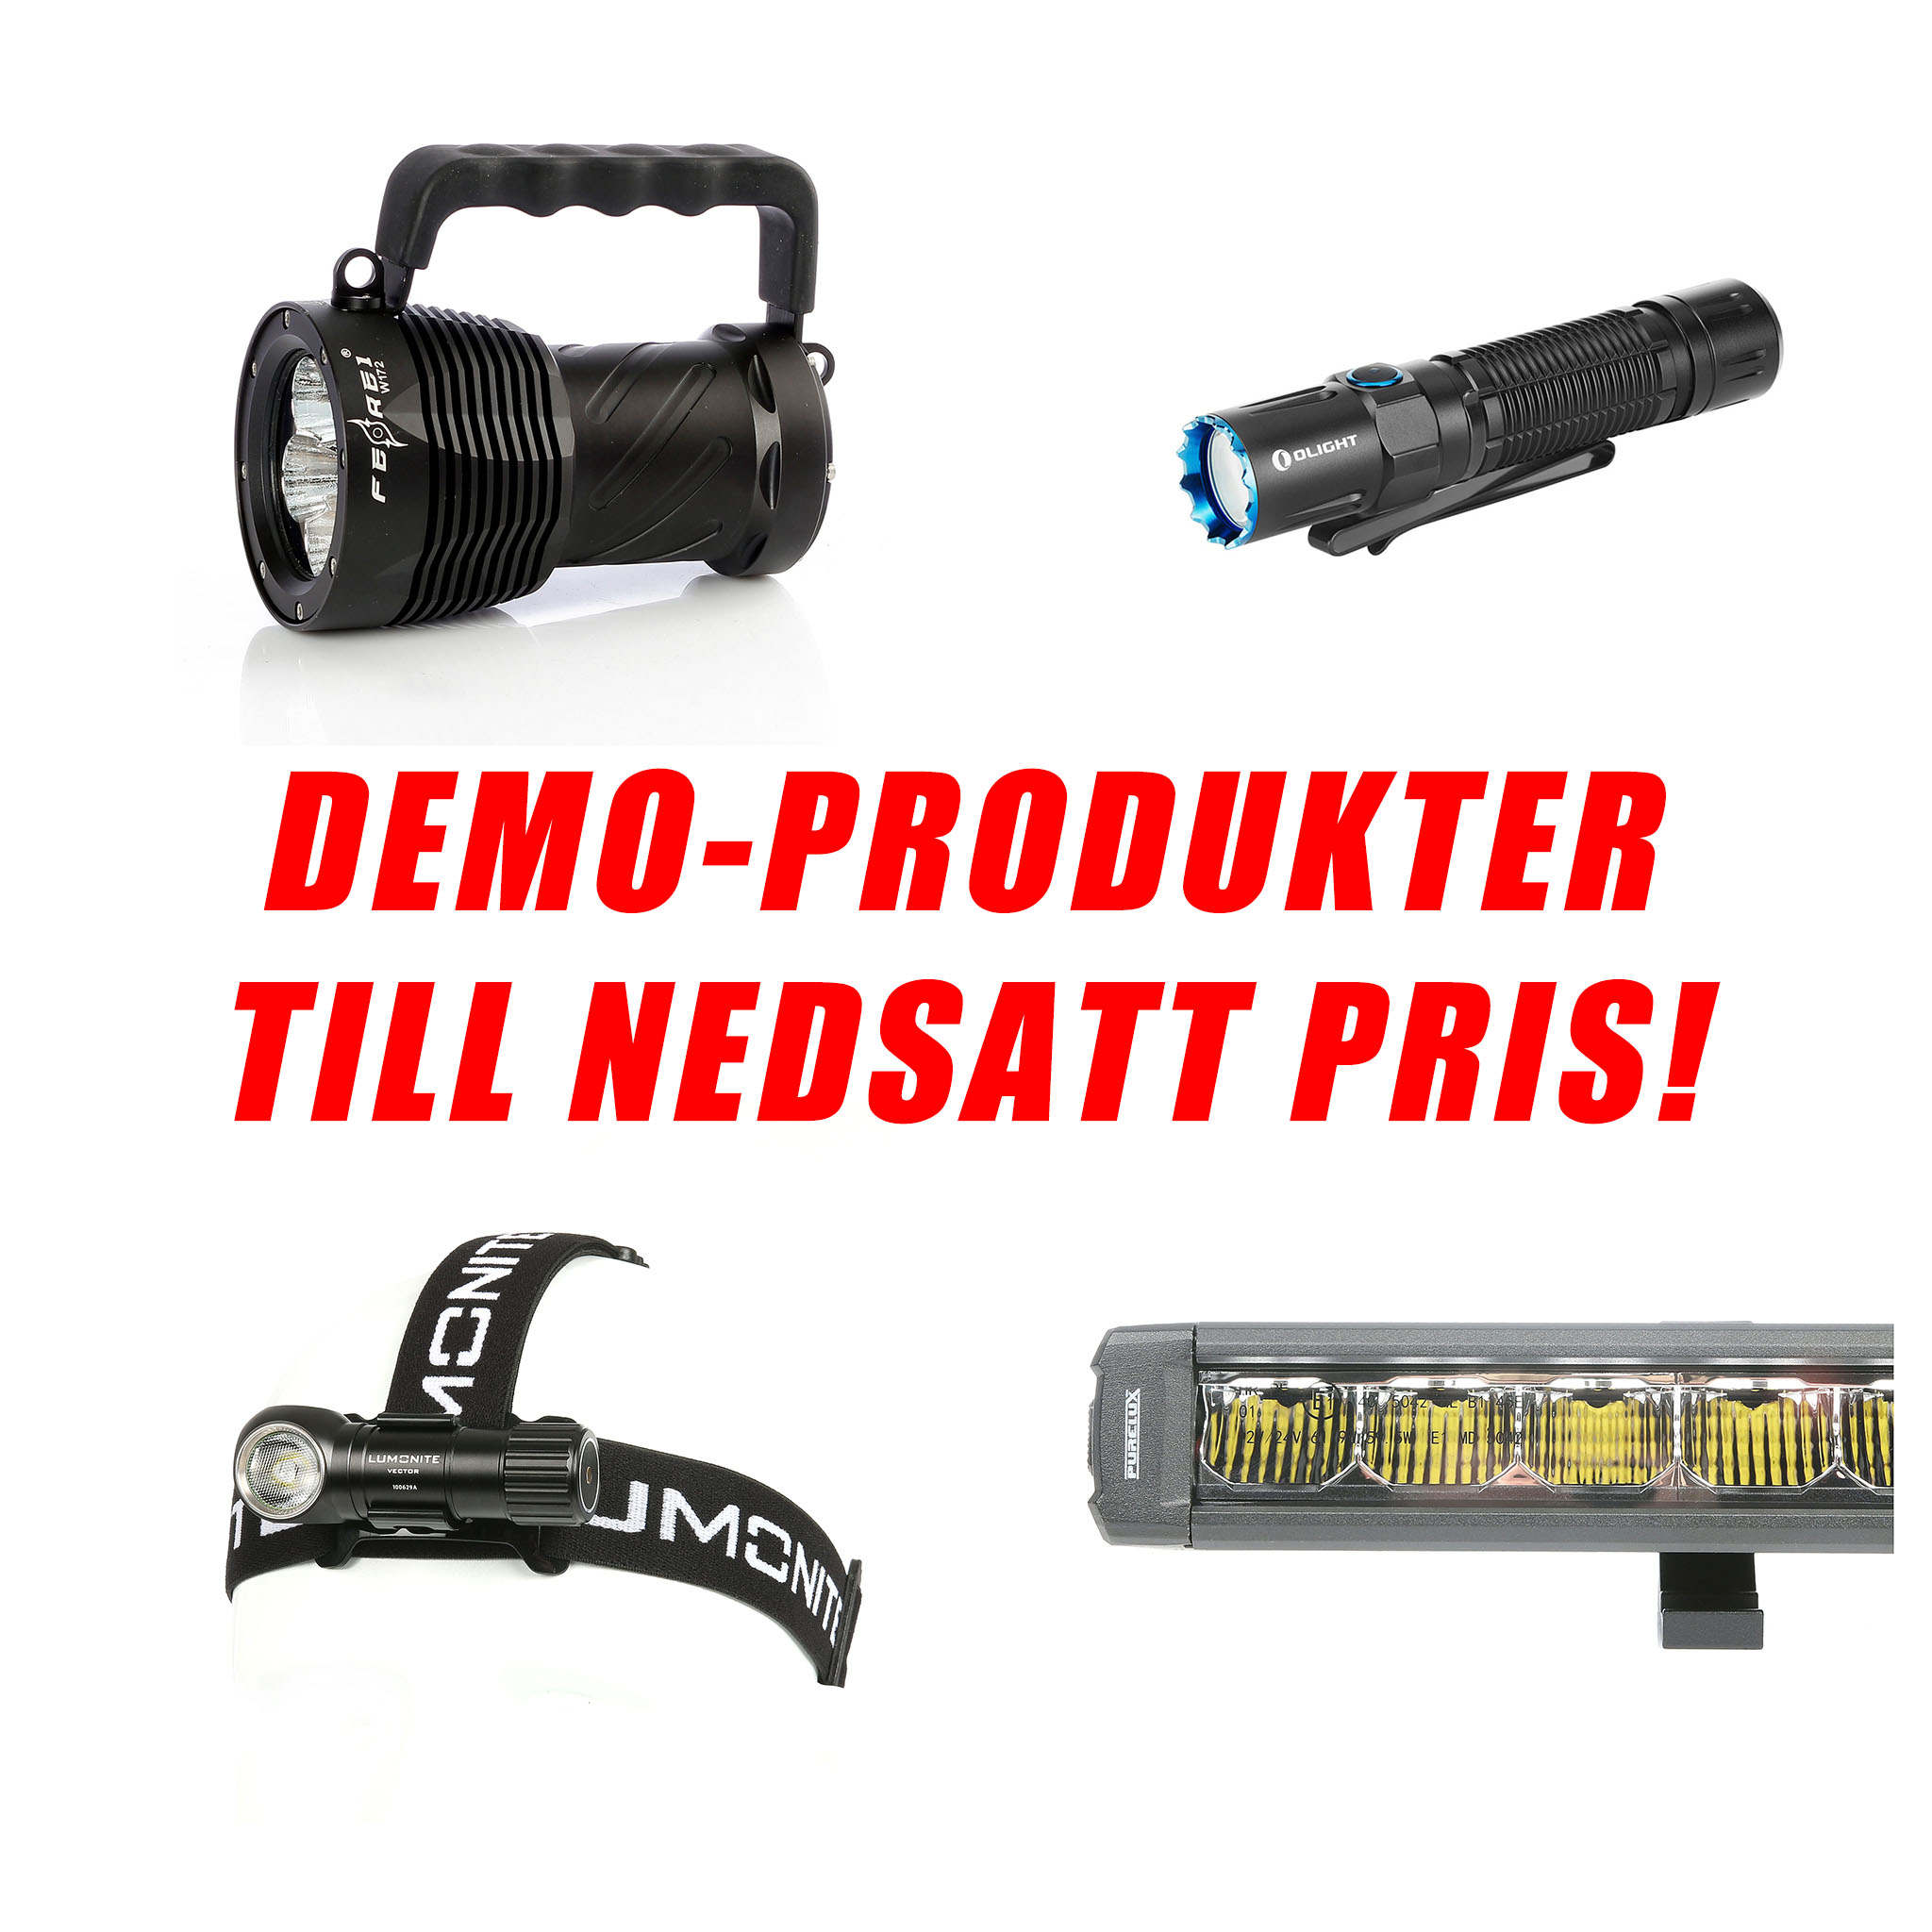 DEMOPRODUKTER - Skadade/saknad förpackning - NEDSATT PRIS!, Produkt 7: LED-list PureStrip Silica, Vattentät, Extra ljusstark, 5m